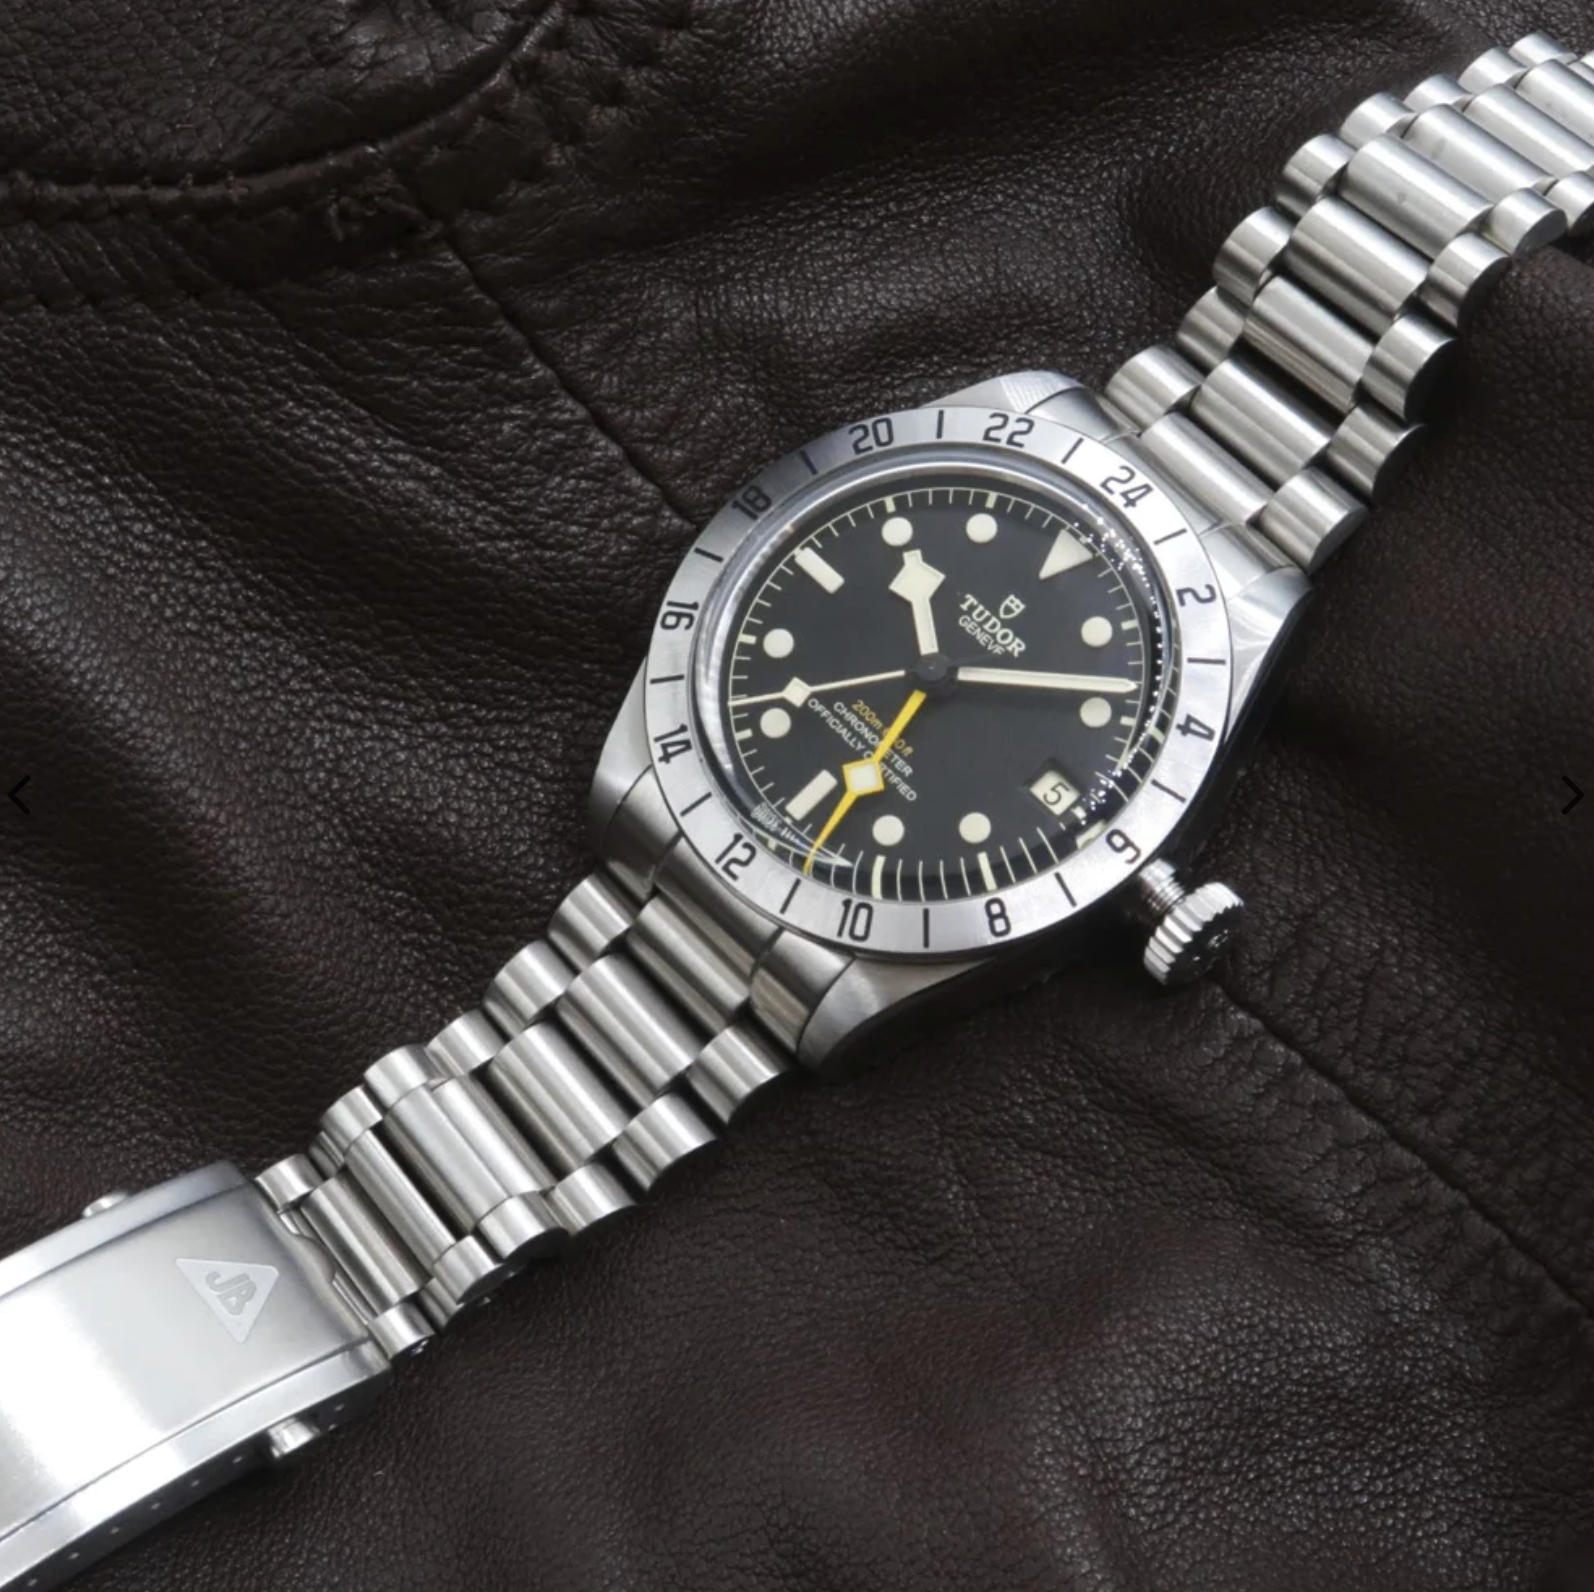 Forstner Bracelets for Tudor Black Bay Pro